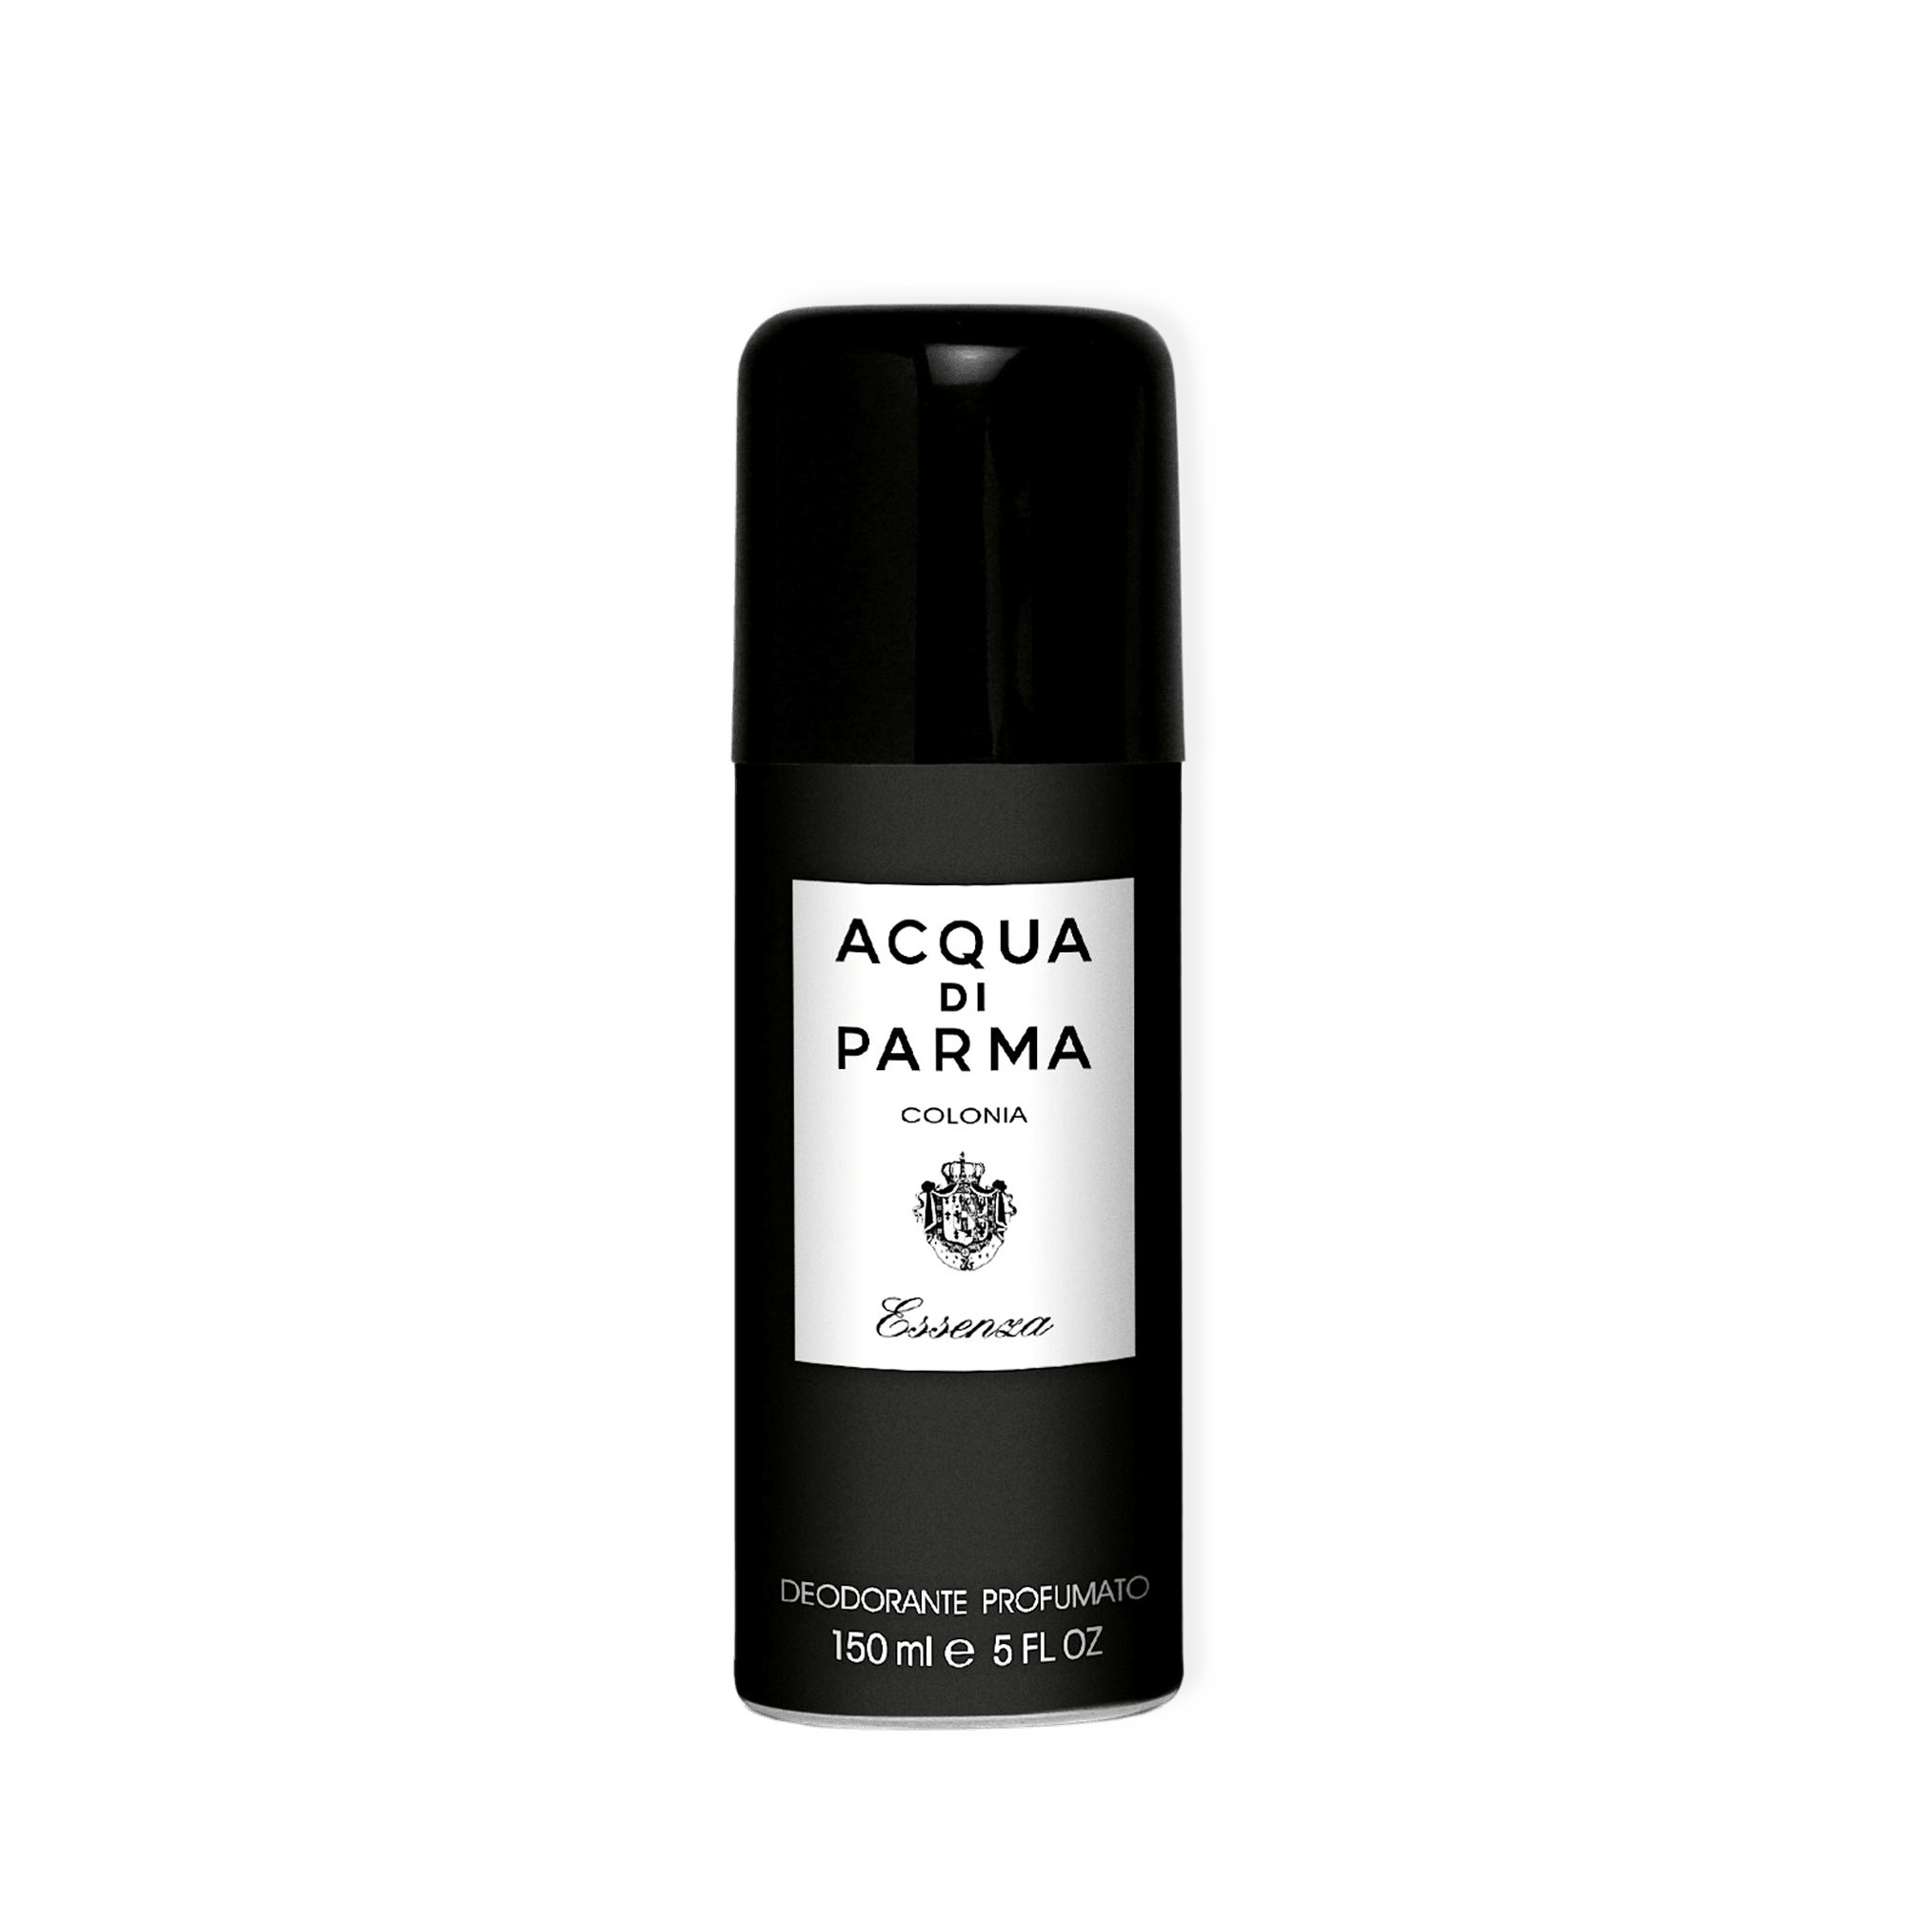 Colonia Essenza Deodorant Spray, 150 ml från Acqua di Parma